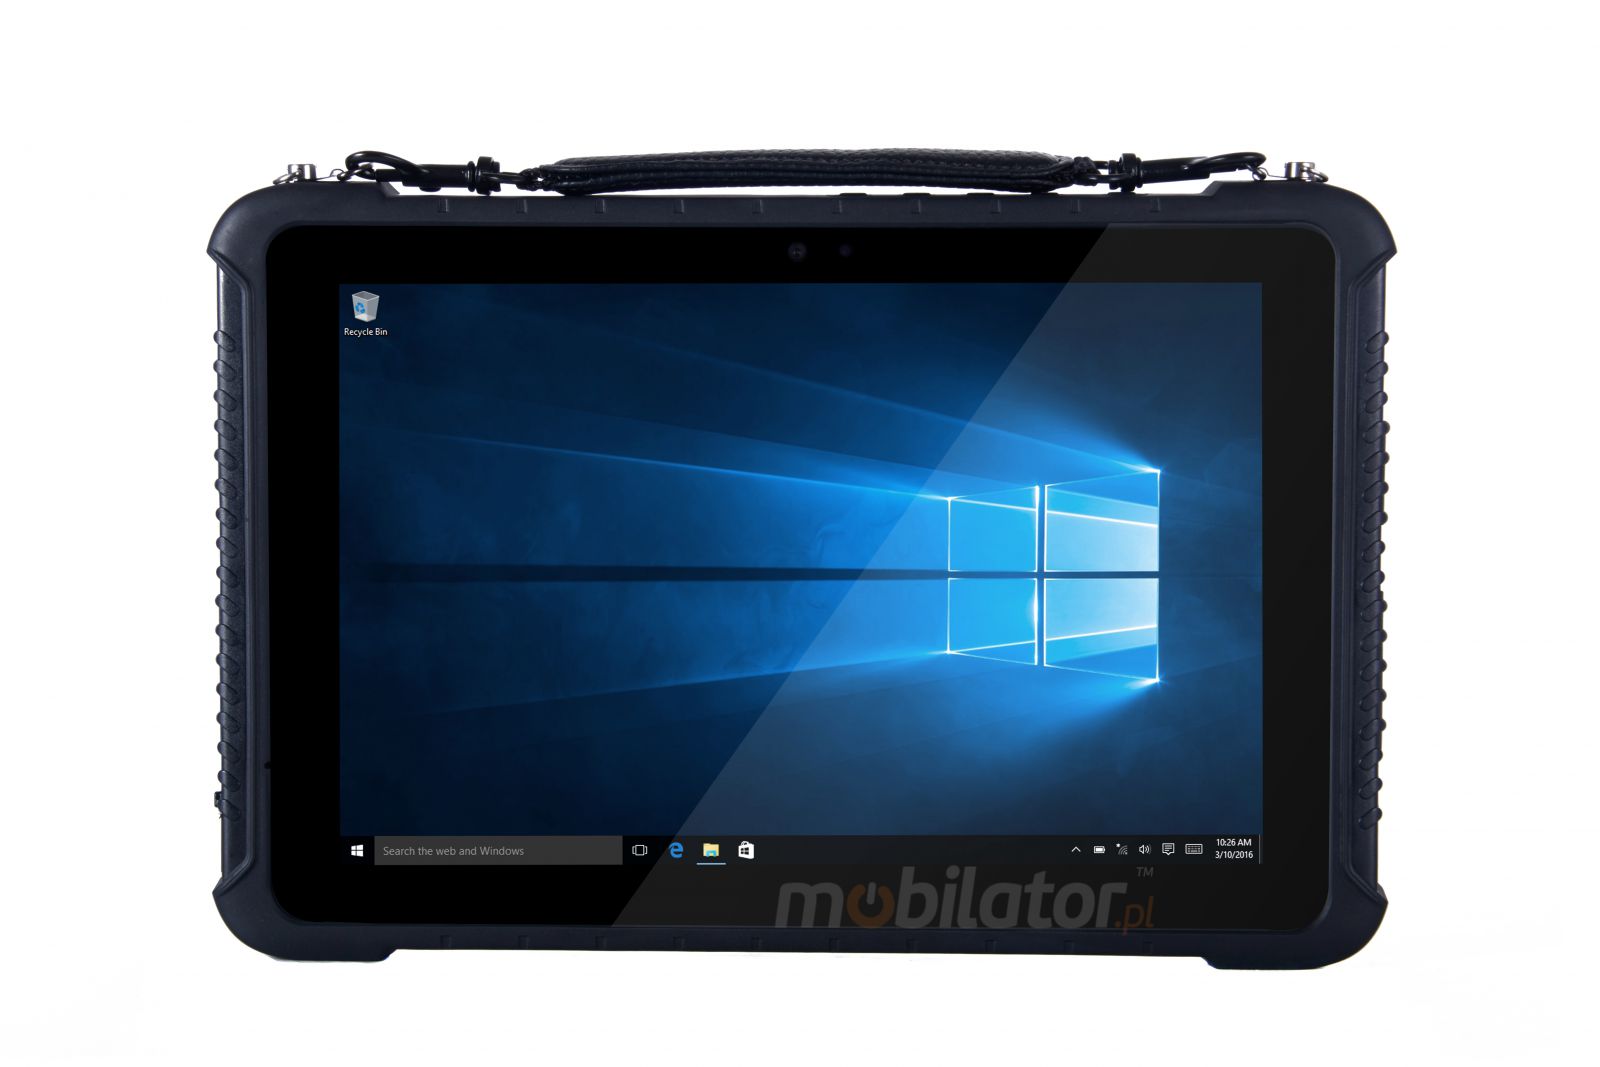 Pyoodporny 10-calowy tablet z czytnikiem kodw kreskowych 1D Honeywell, procesorem Intel Skylake, Windows 10 PRO, 4GB RAM, 128GB ROM - Emdoor I16K v.6